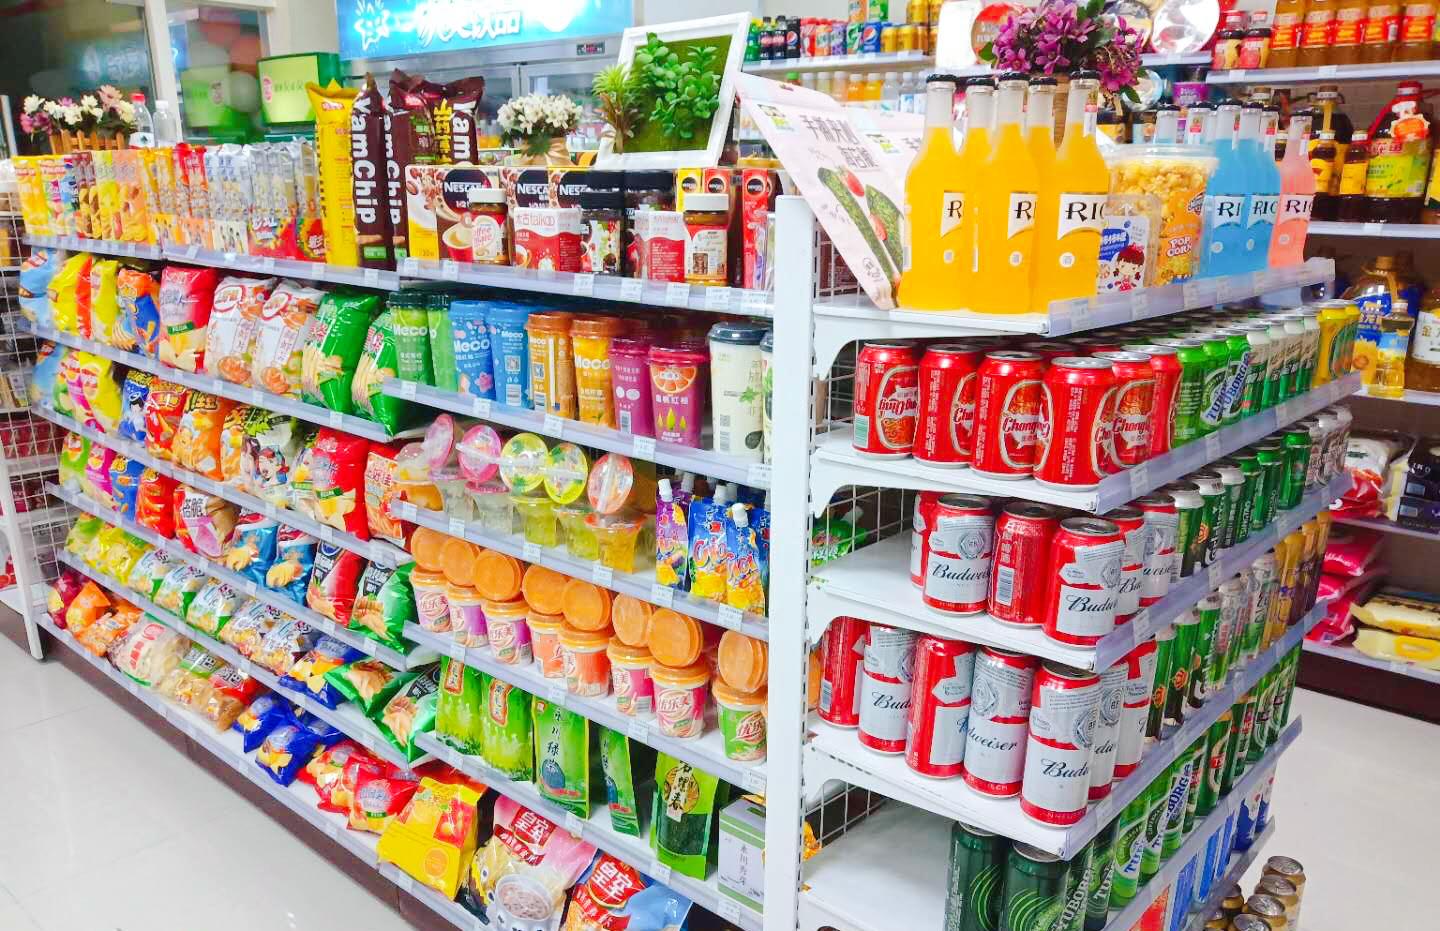 开一家小超市便利店到底挣不挣钱?年利润有多少?